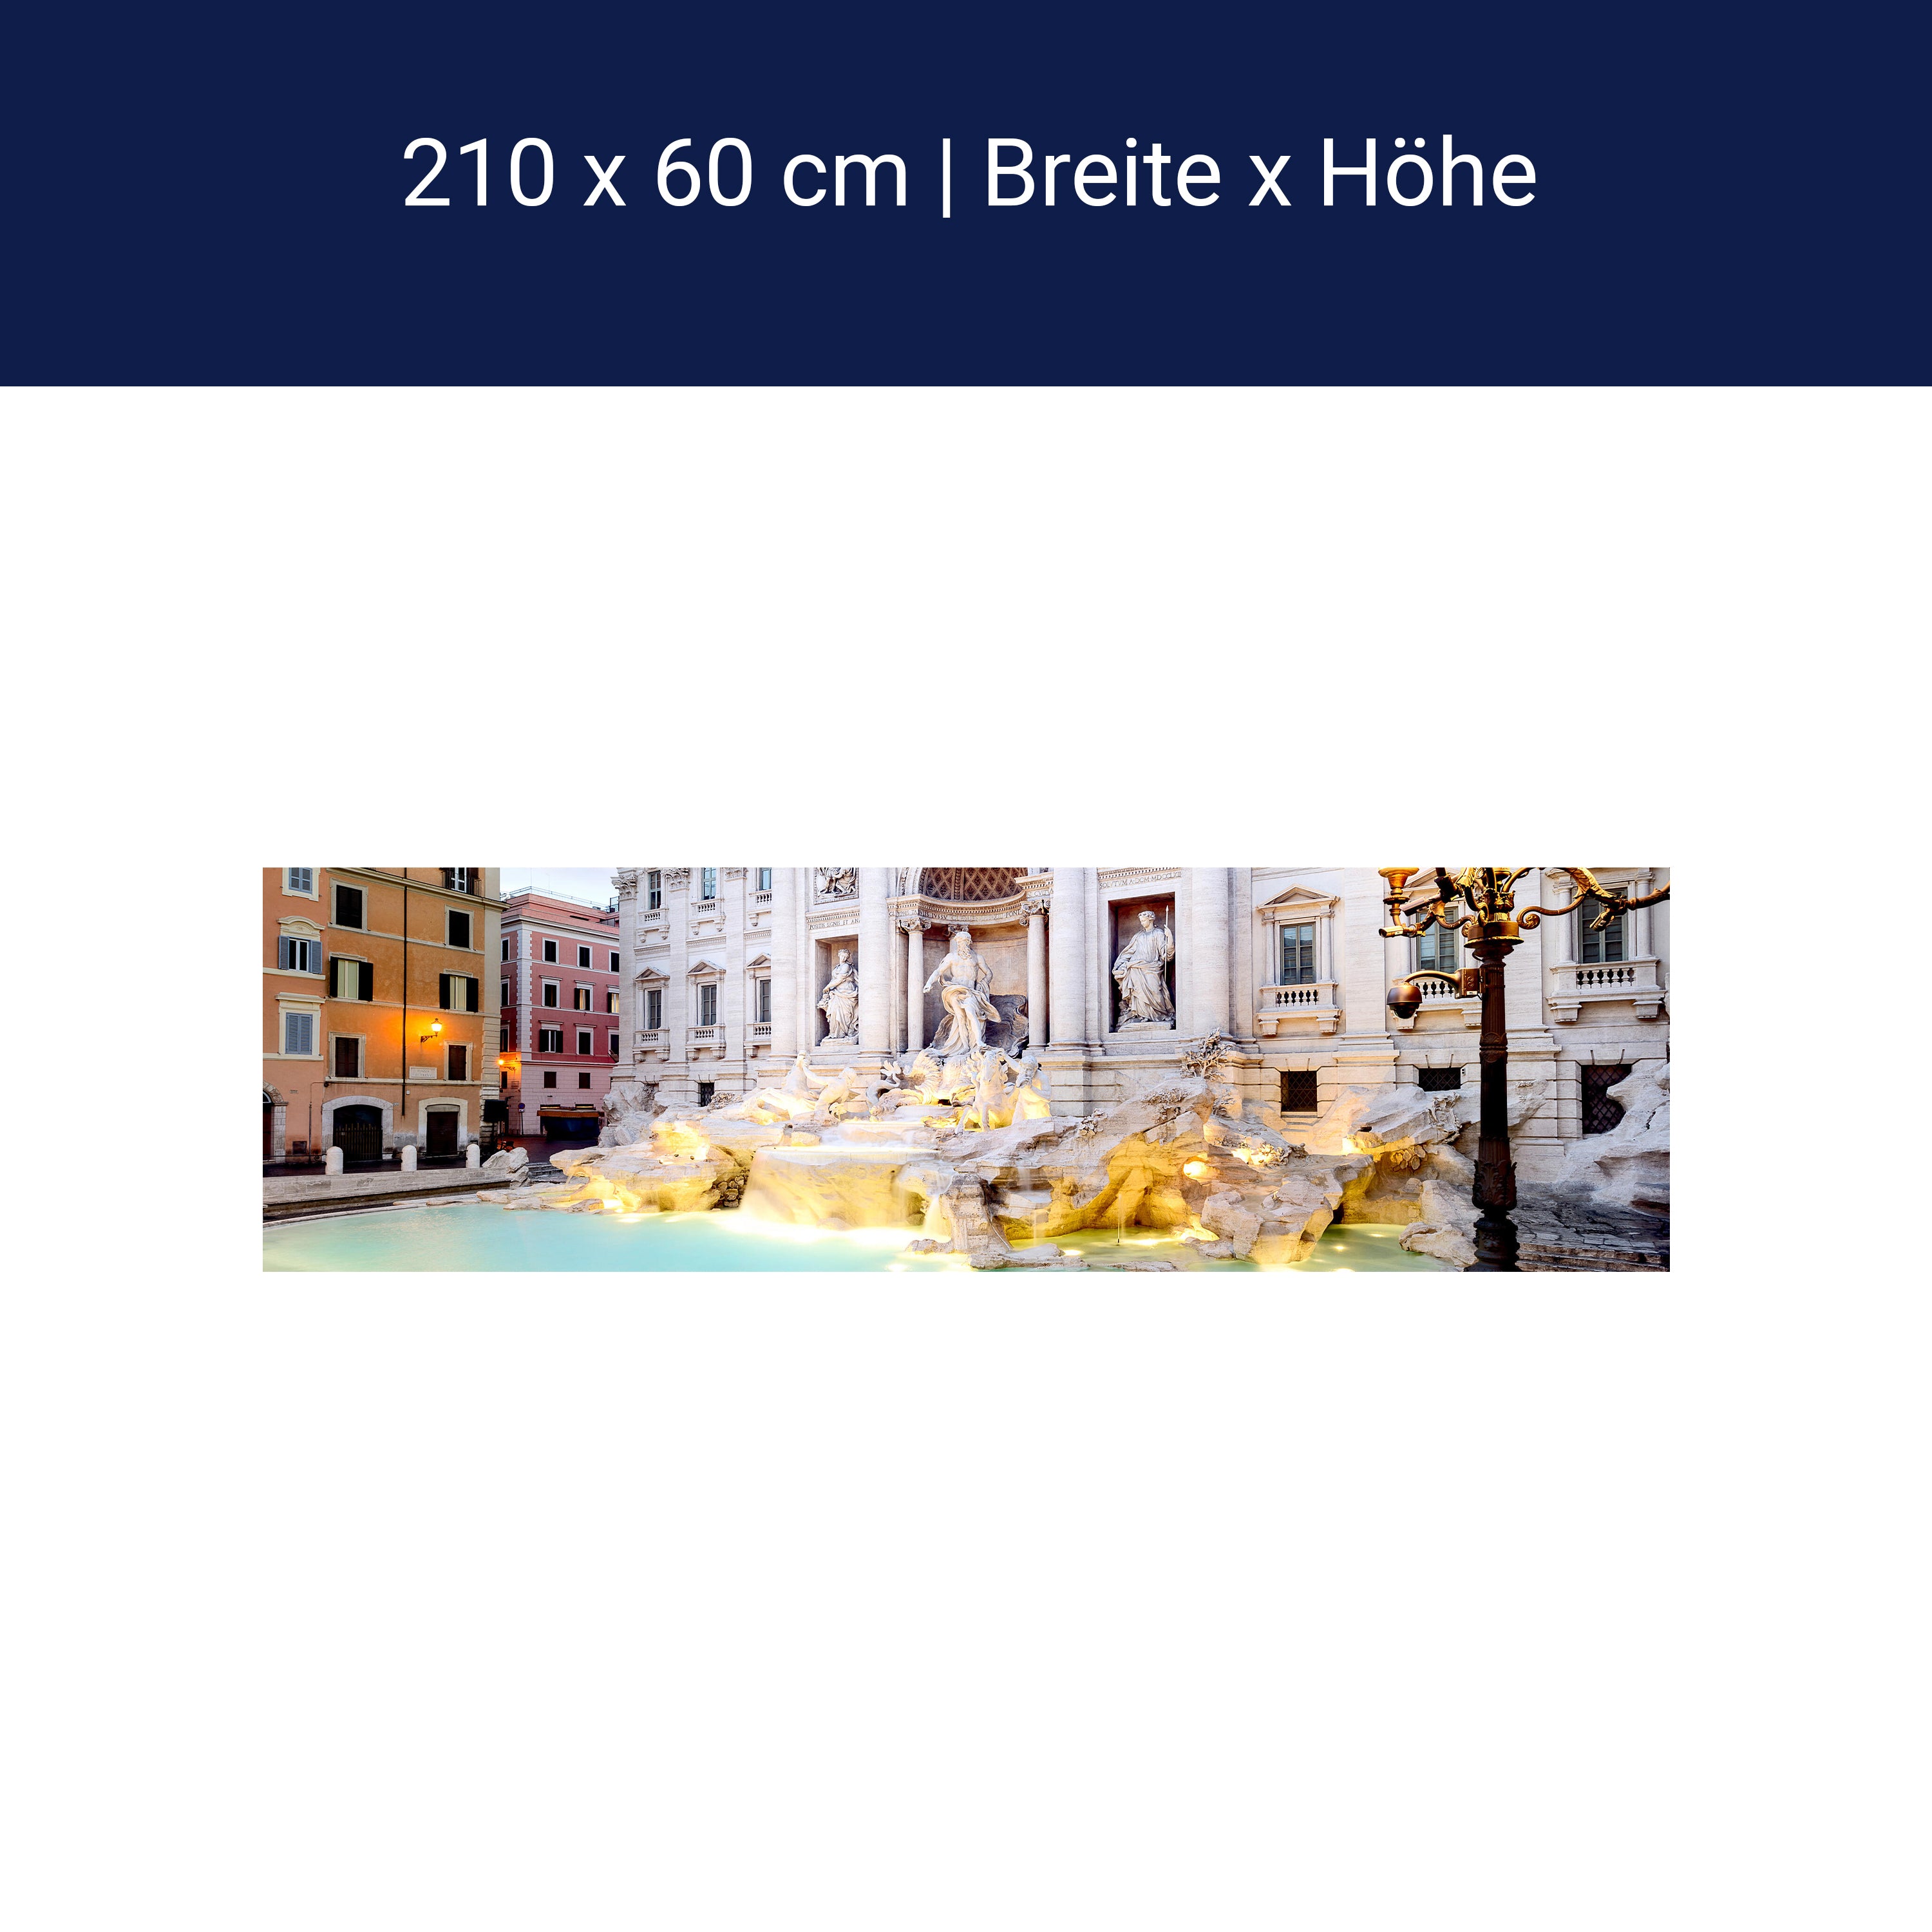 Kitchen splashback Trevi Fountain, Rome M1024